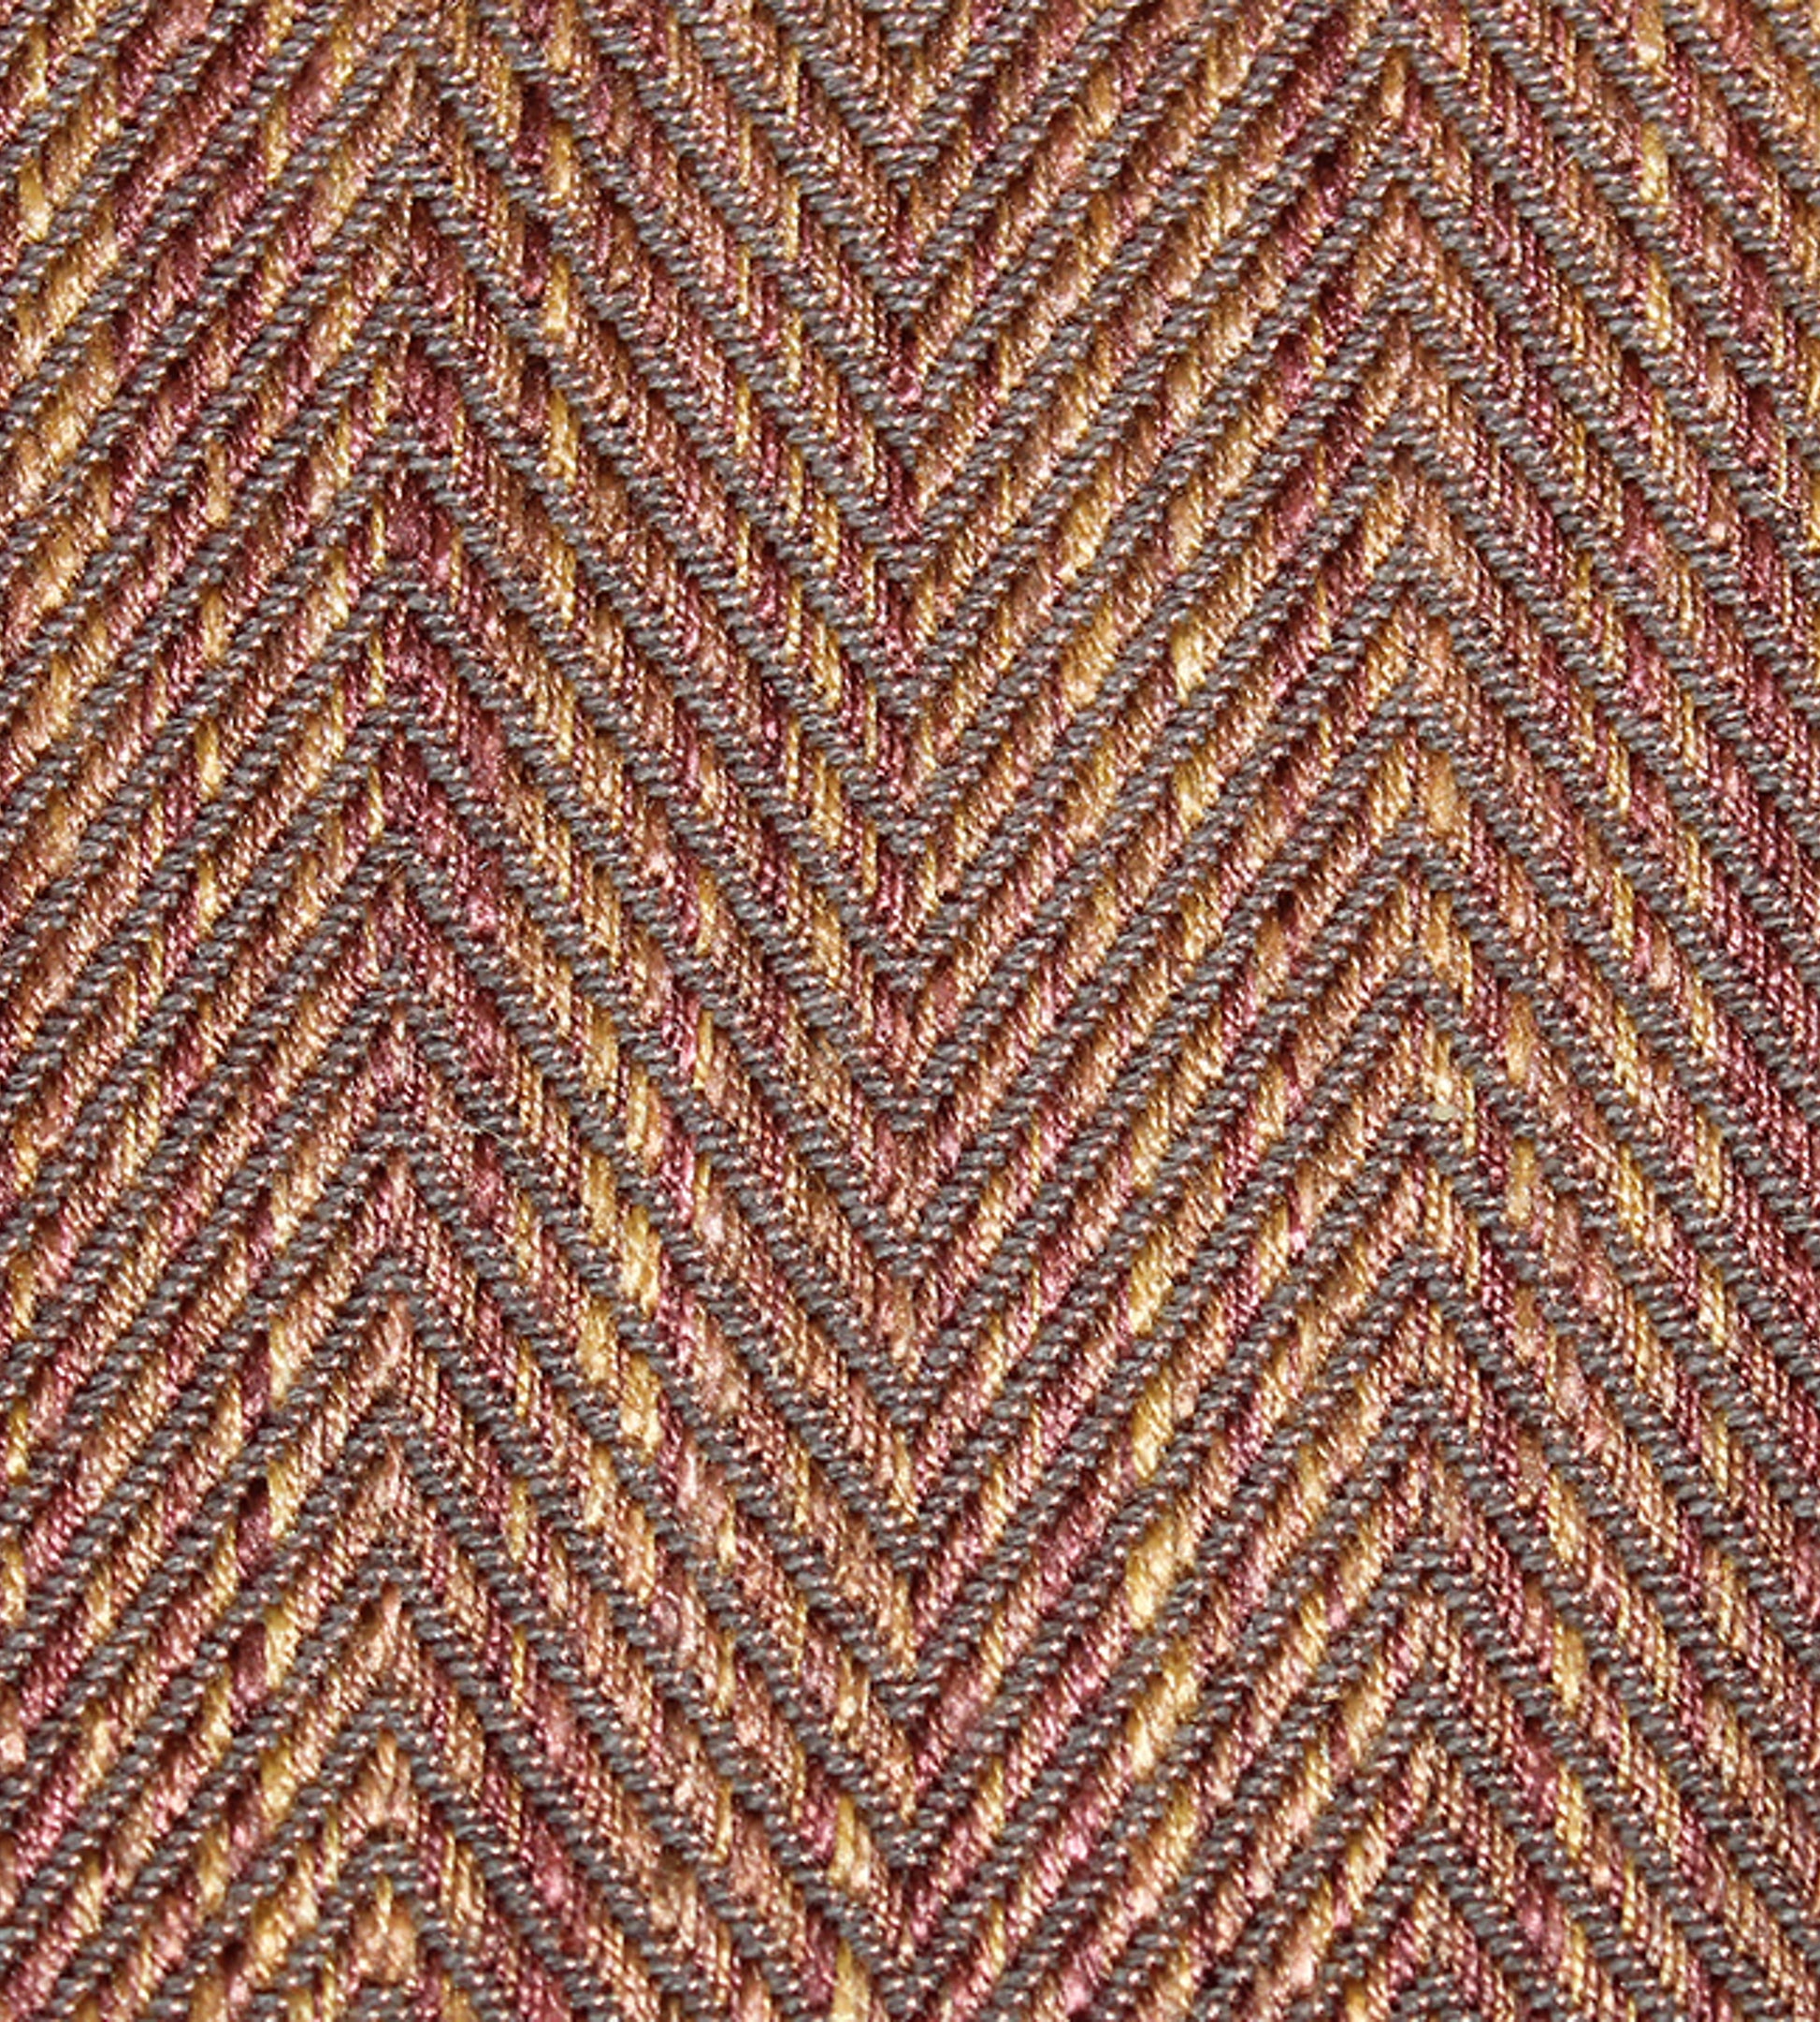 Purchase Scalamandre Fabric Item SC 000726977, Cambridge Bronze 1